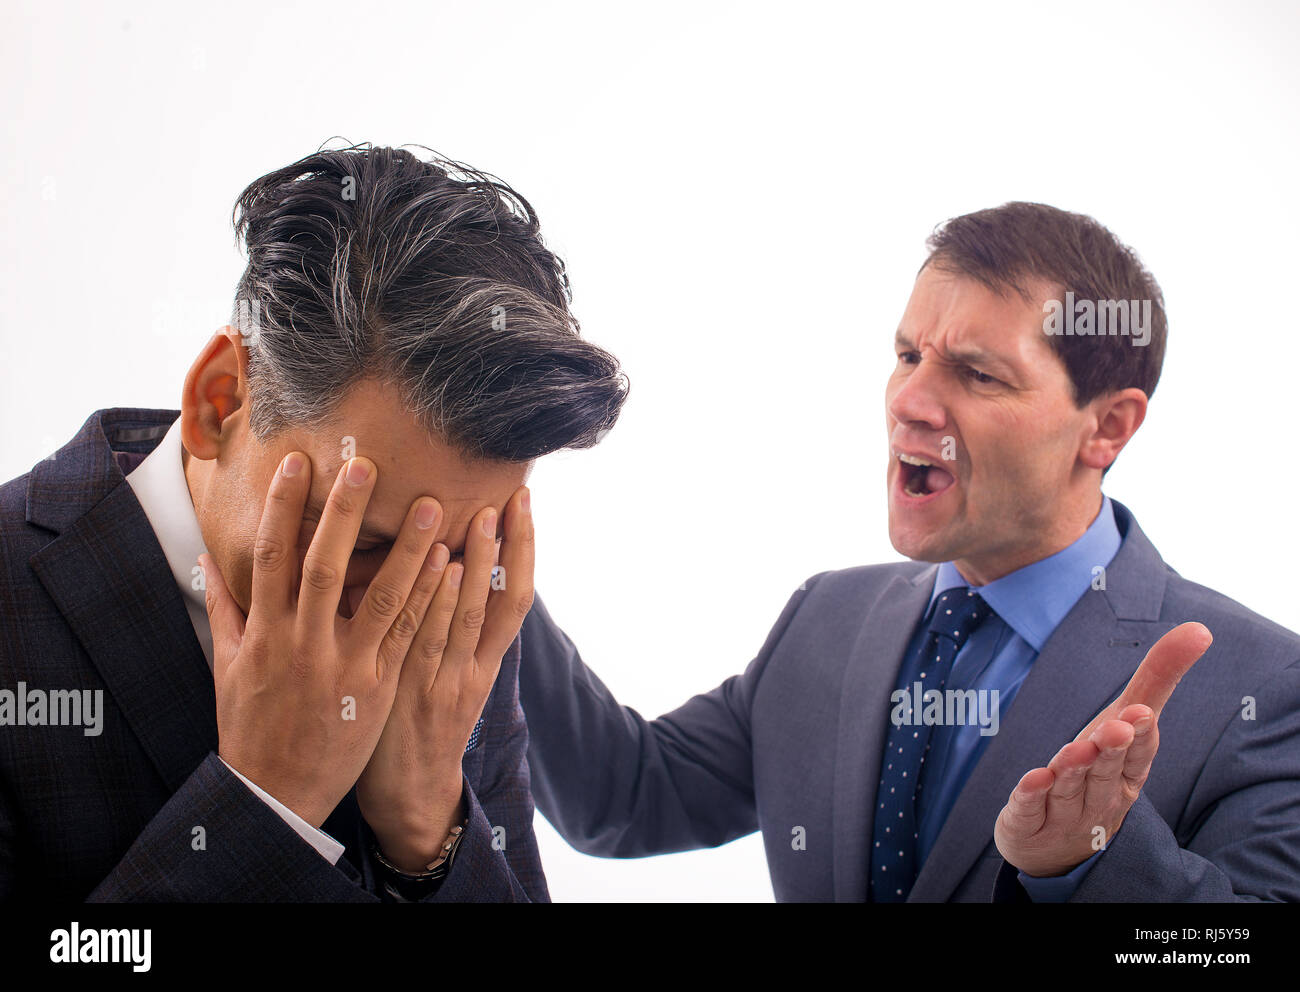 Dos hombres de negocios que tienen un argumento contra un fondo blanco llano. Un hombre tiene su cabeza en sus manos y el otro le está gritando. Foto de stock